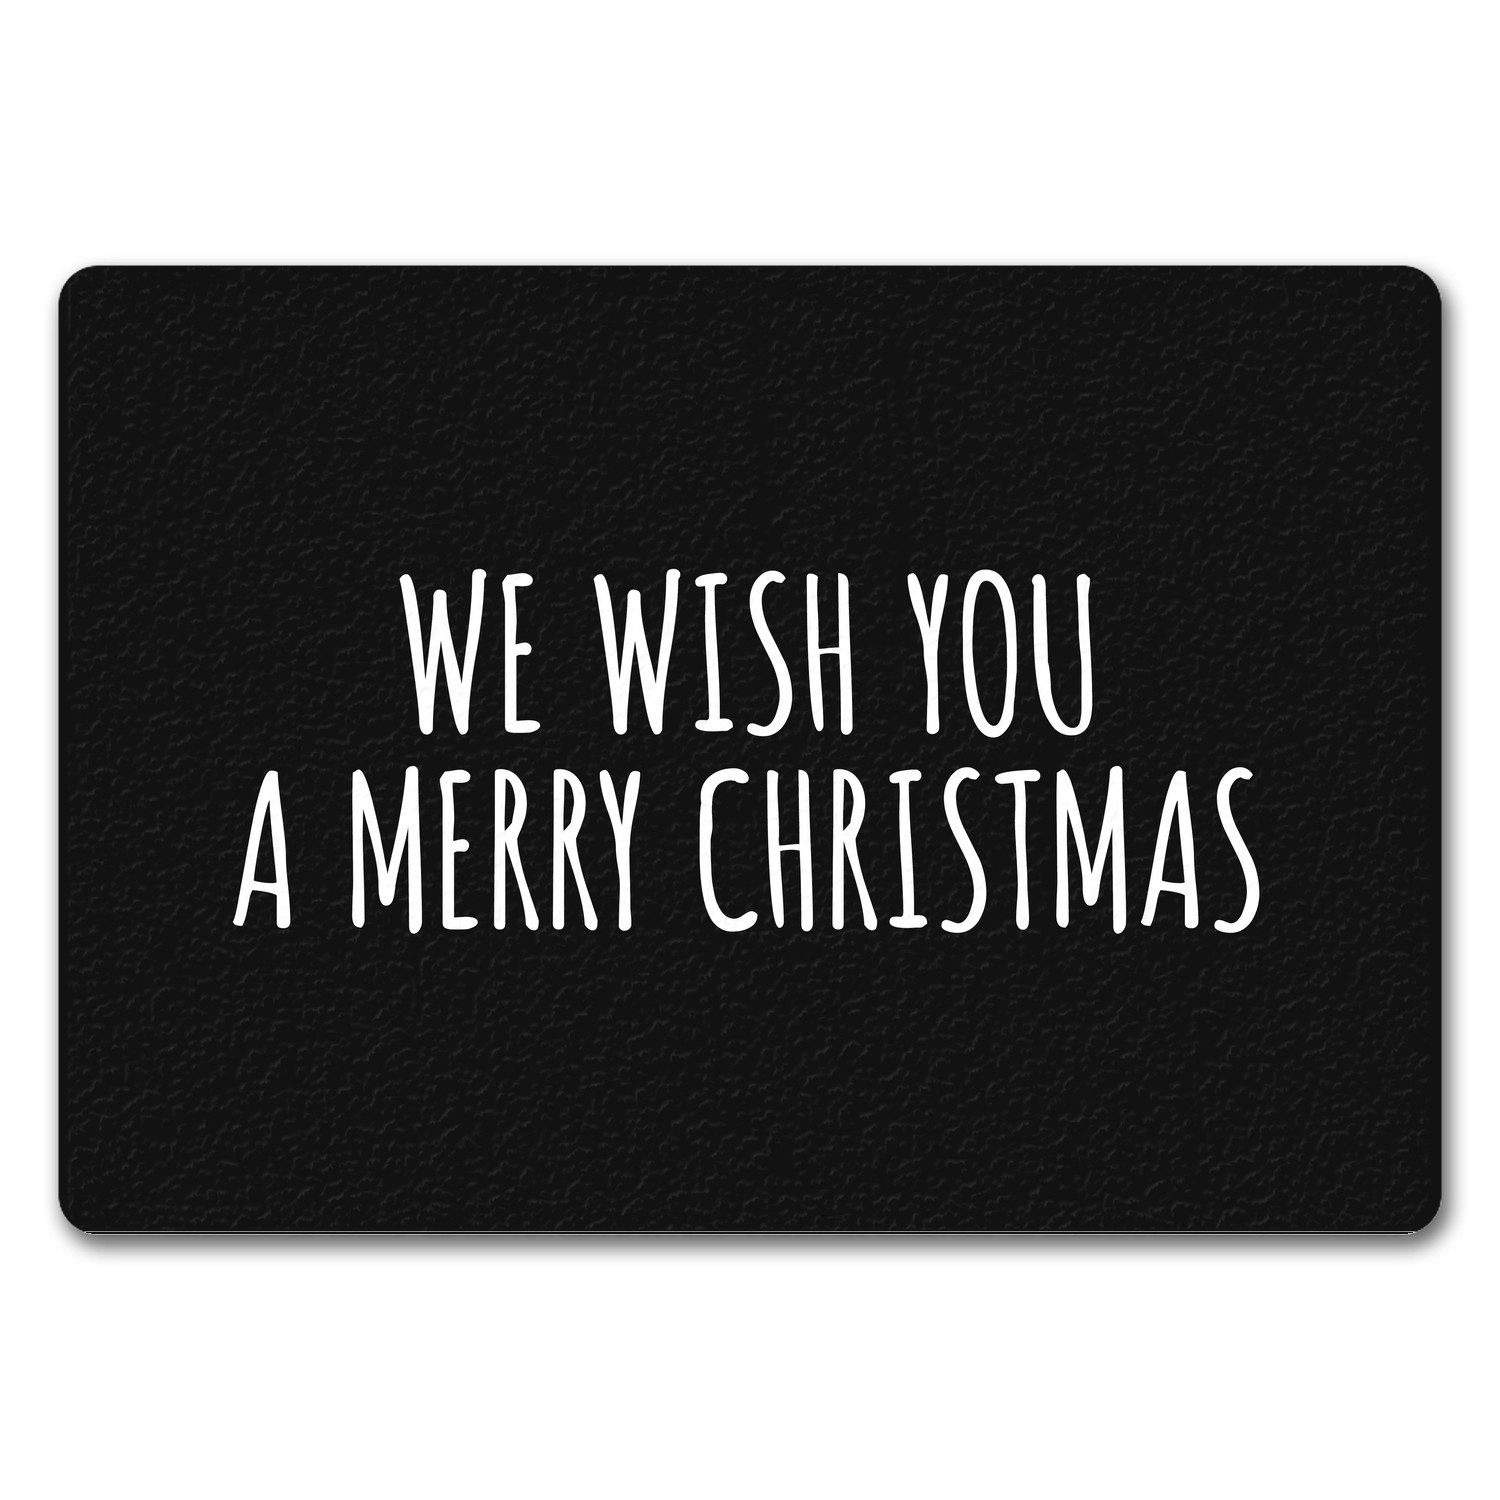 Fußmatte We wish you a merry christmas Fußmatte ohne Rand in schwarz weiß, speecheese